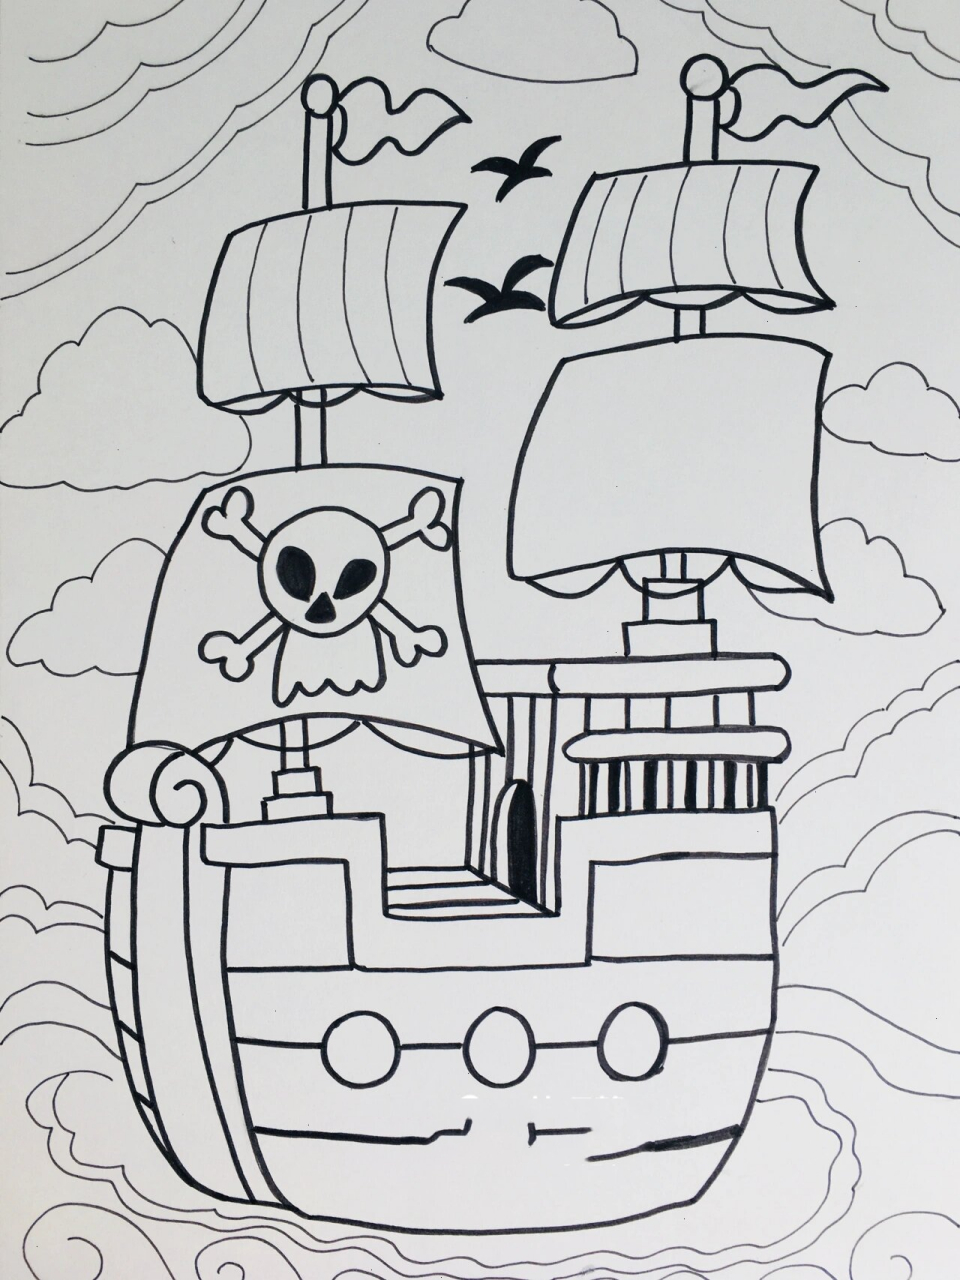 大海盗船简笔画图片